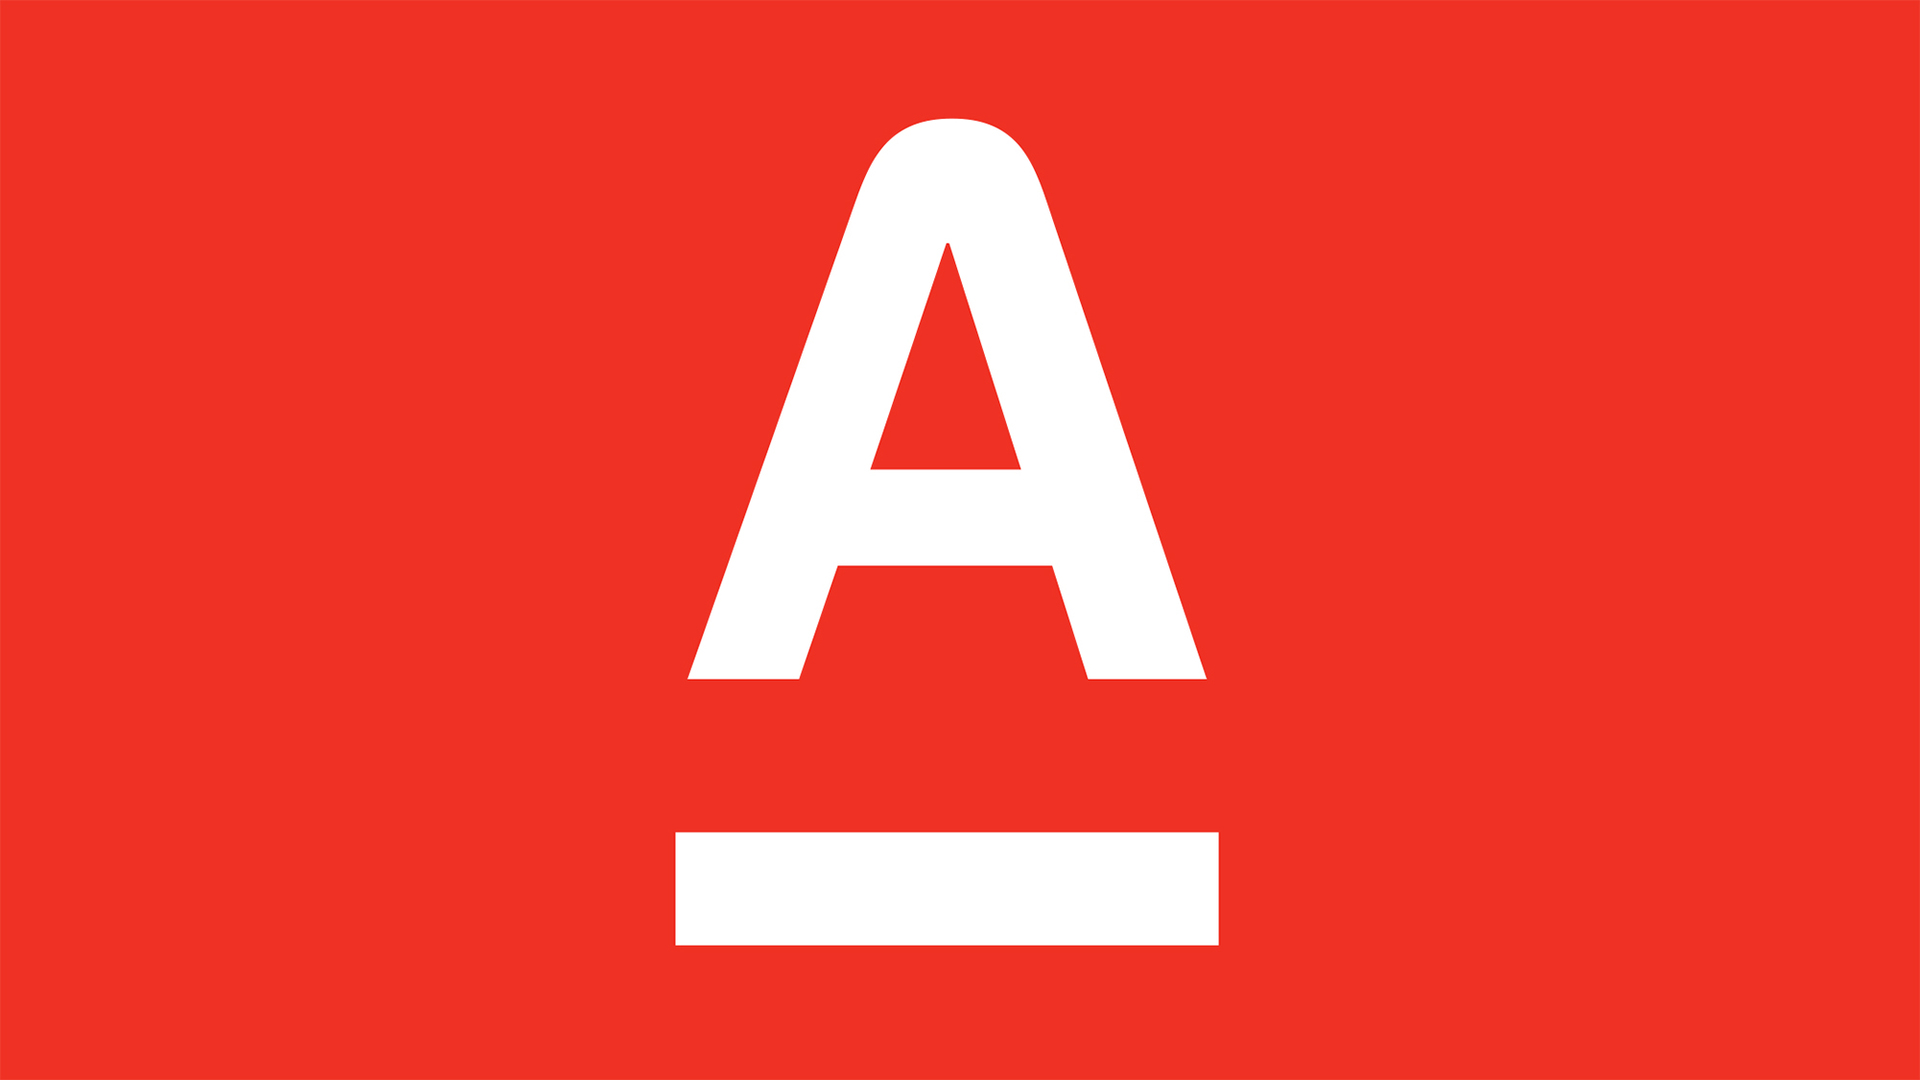 Альфабой. Альфа банк. Логотип Alfa Bank. Альфа банк лого вектор. Символ Альфа банка.